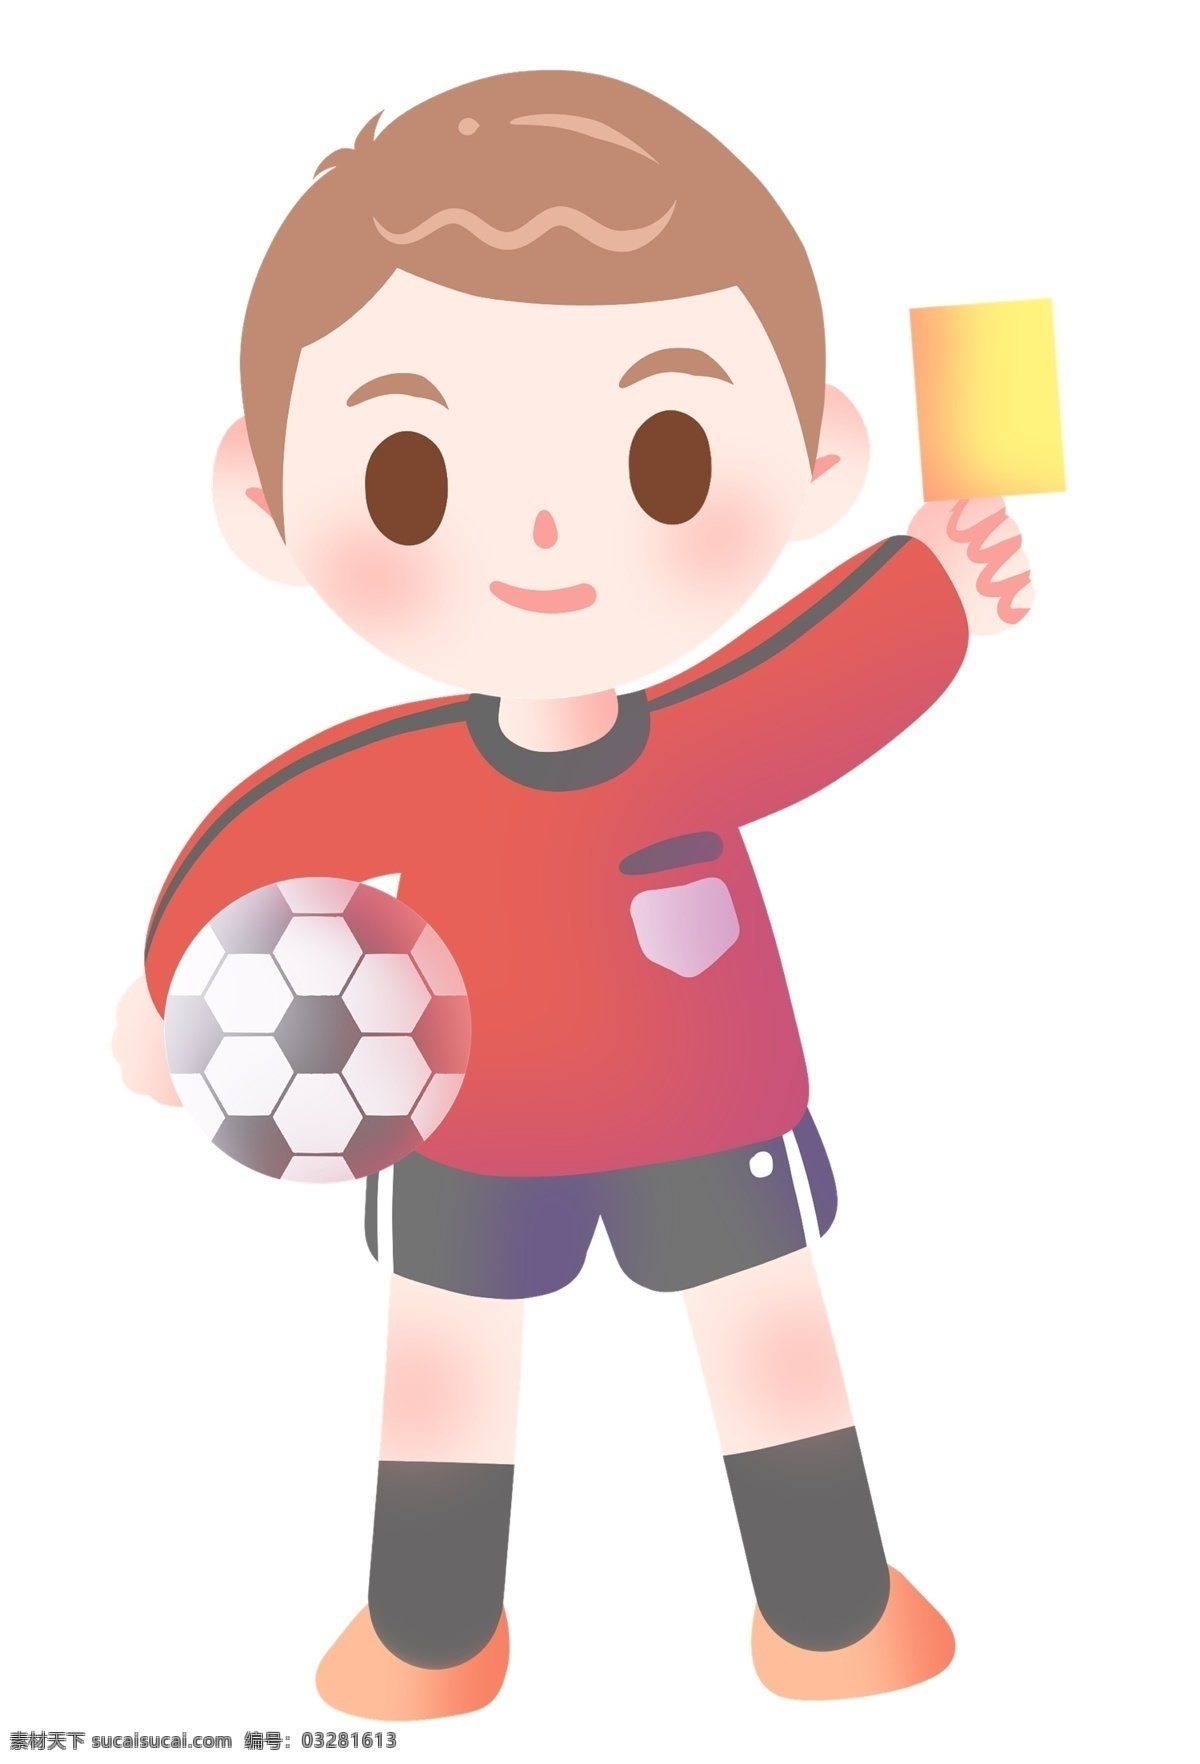 足球 裁判 卡通 插画 足球裁判 黄牌 足球运动 踢 小 男孩 体育运动 可爱的运动员 体育比赛